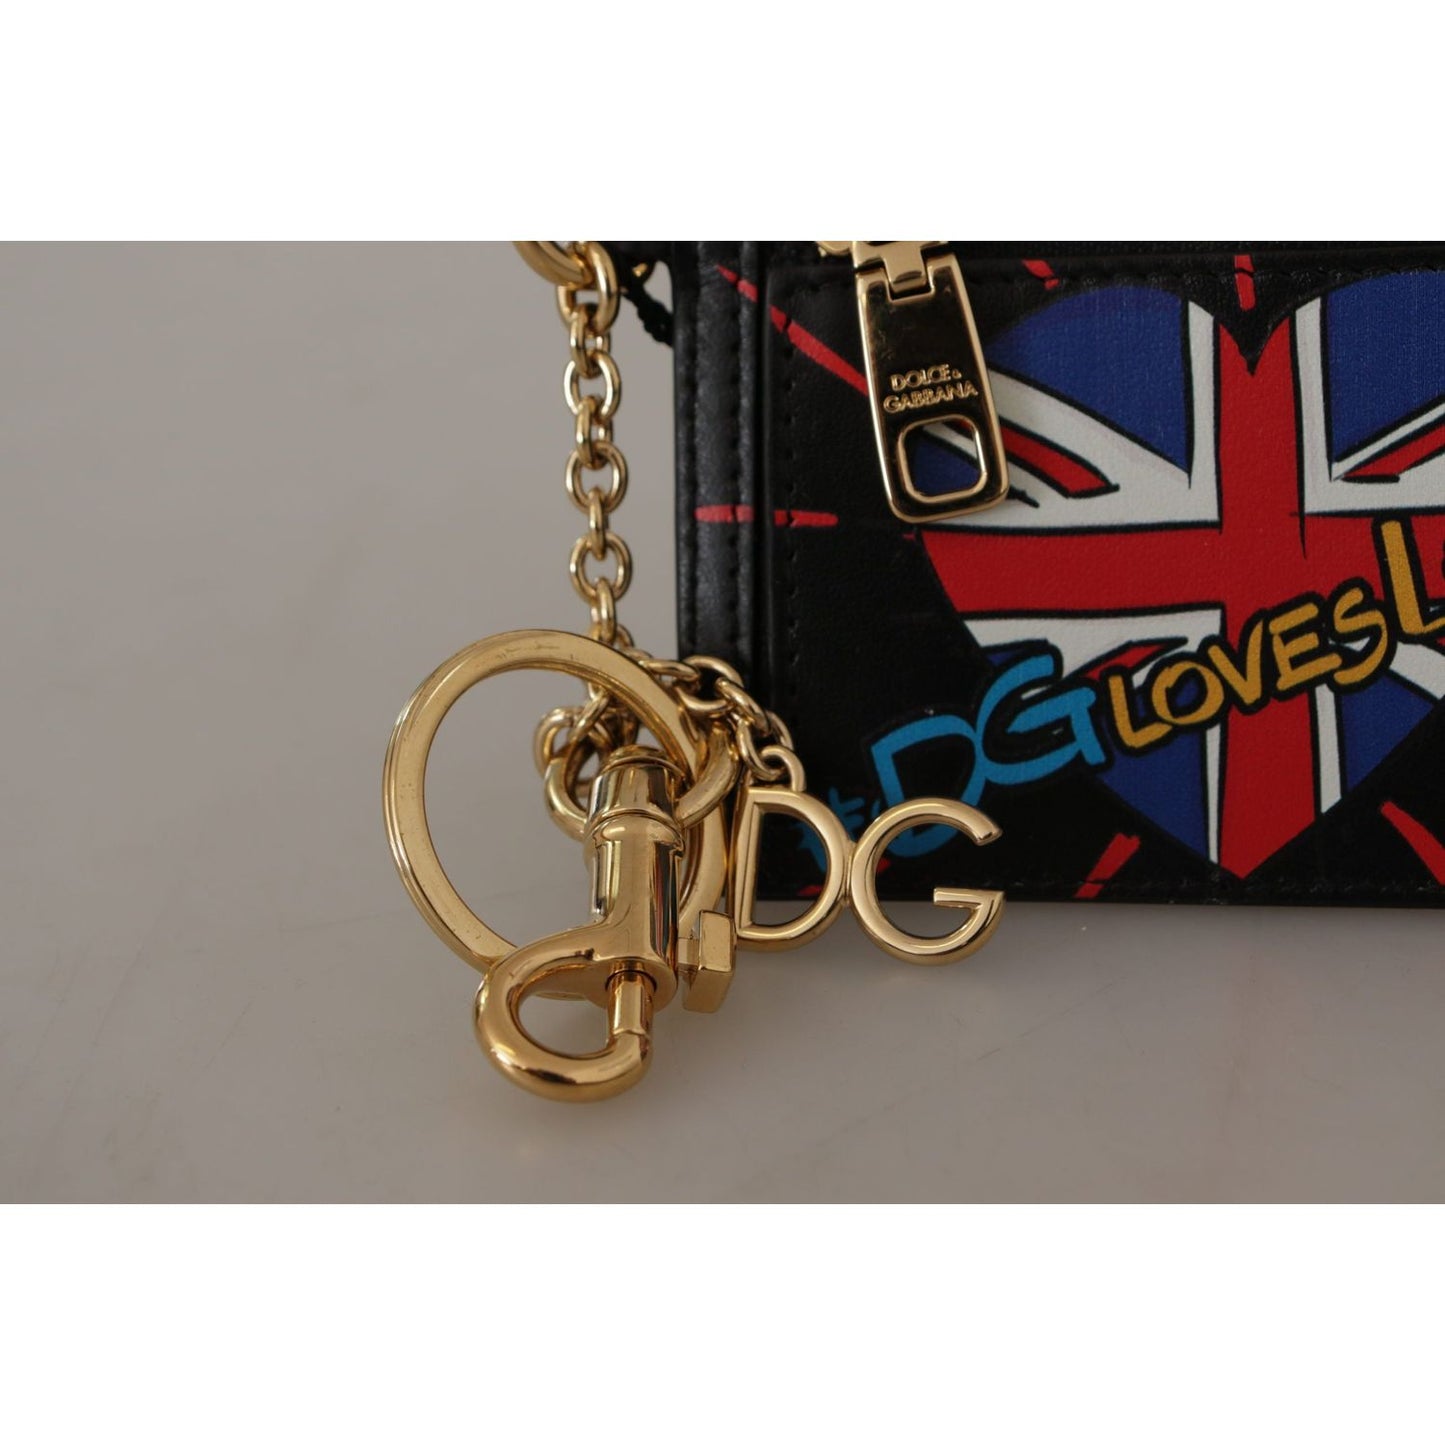 Dolce & GabbanaElegant Leather Coin Wallet With KeyringMcRichard Designer Brands£299.00